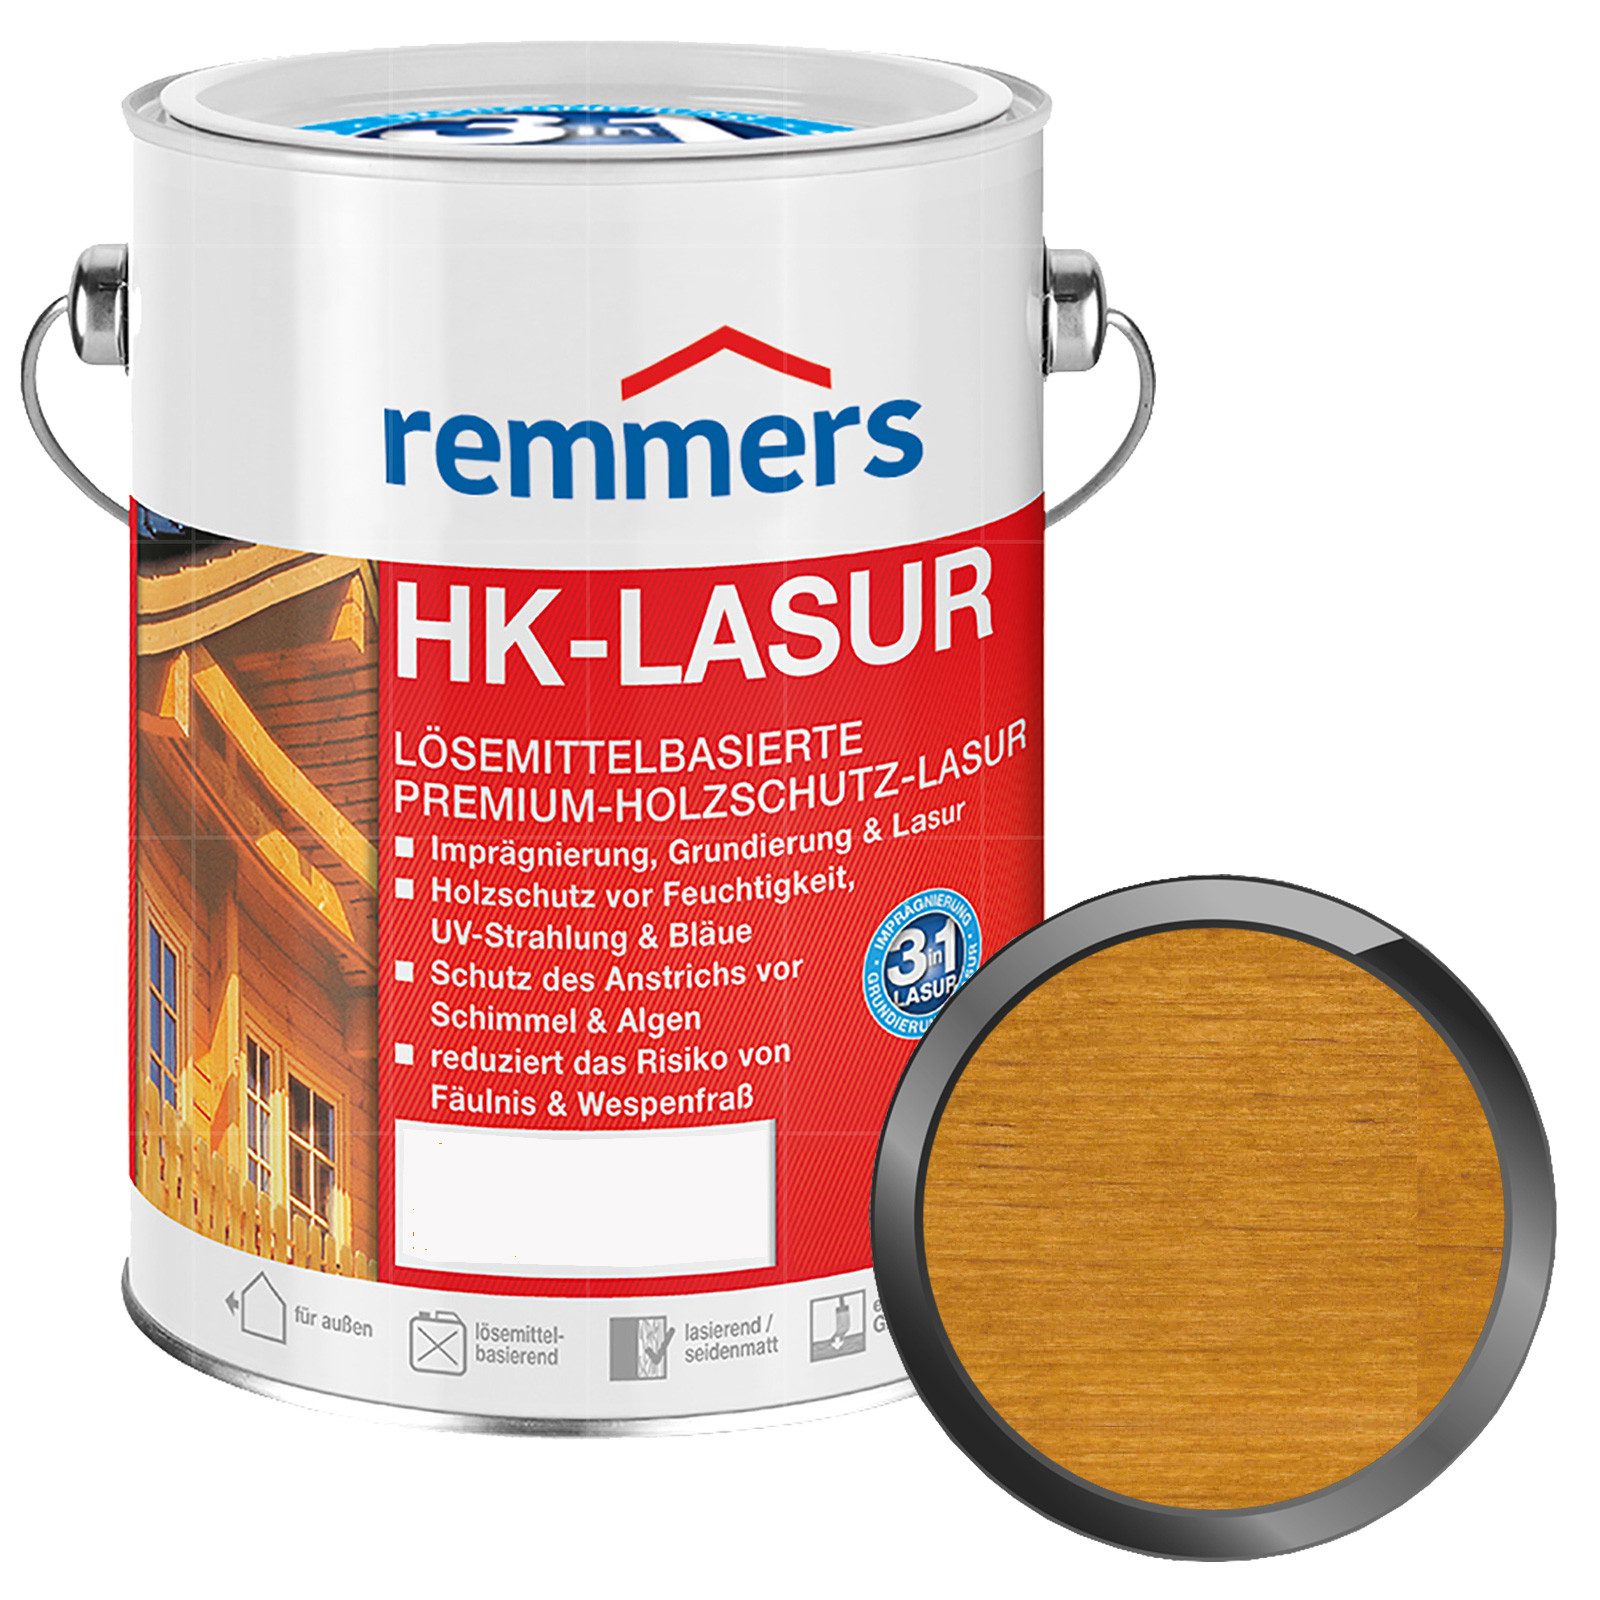 Remmers Holzschutzlasur HK-LASUR - 2.5 LTR